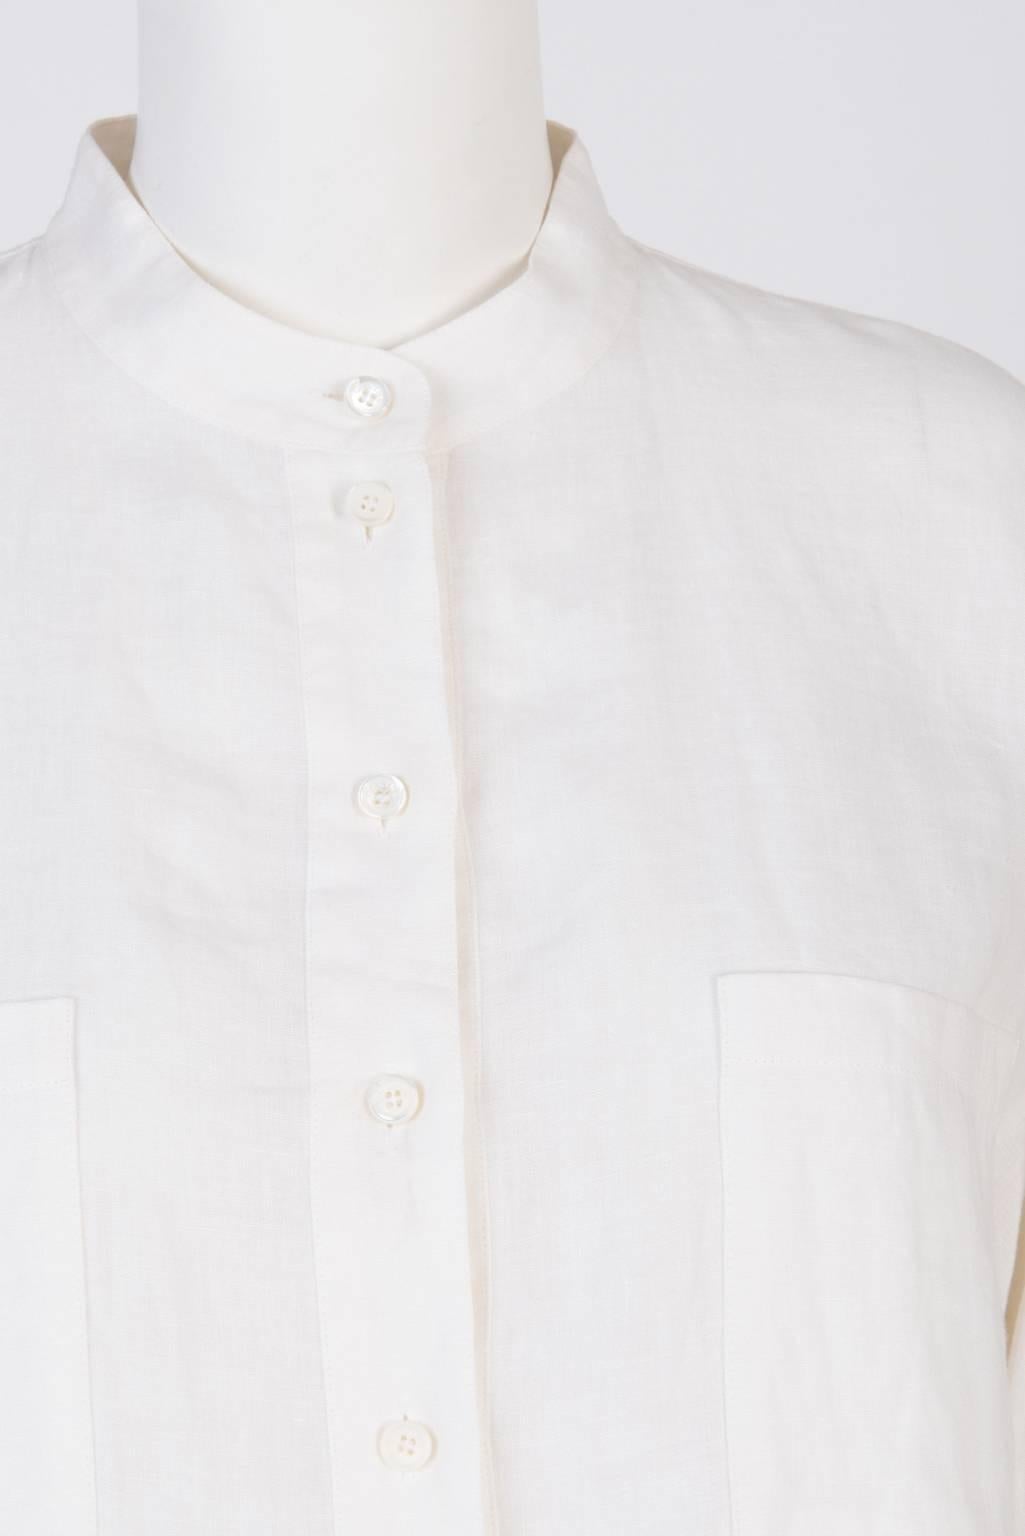 Celine White Shirt Tunic  In Good Condition In Xiamen, Fujian